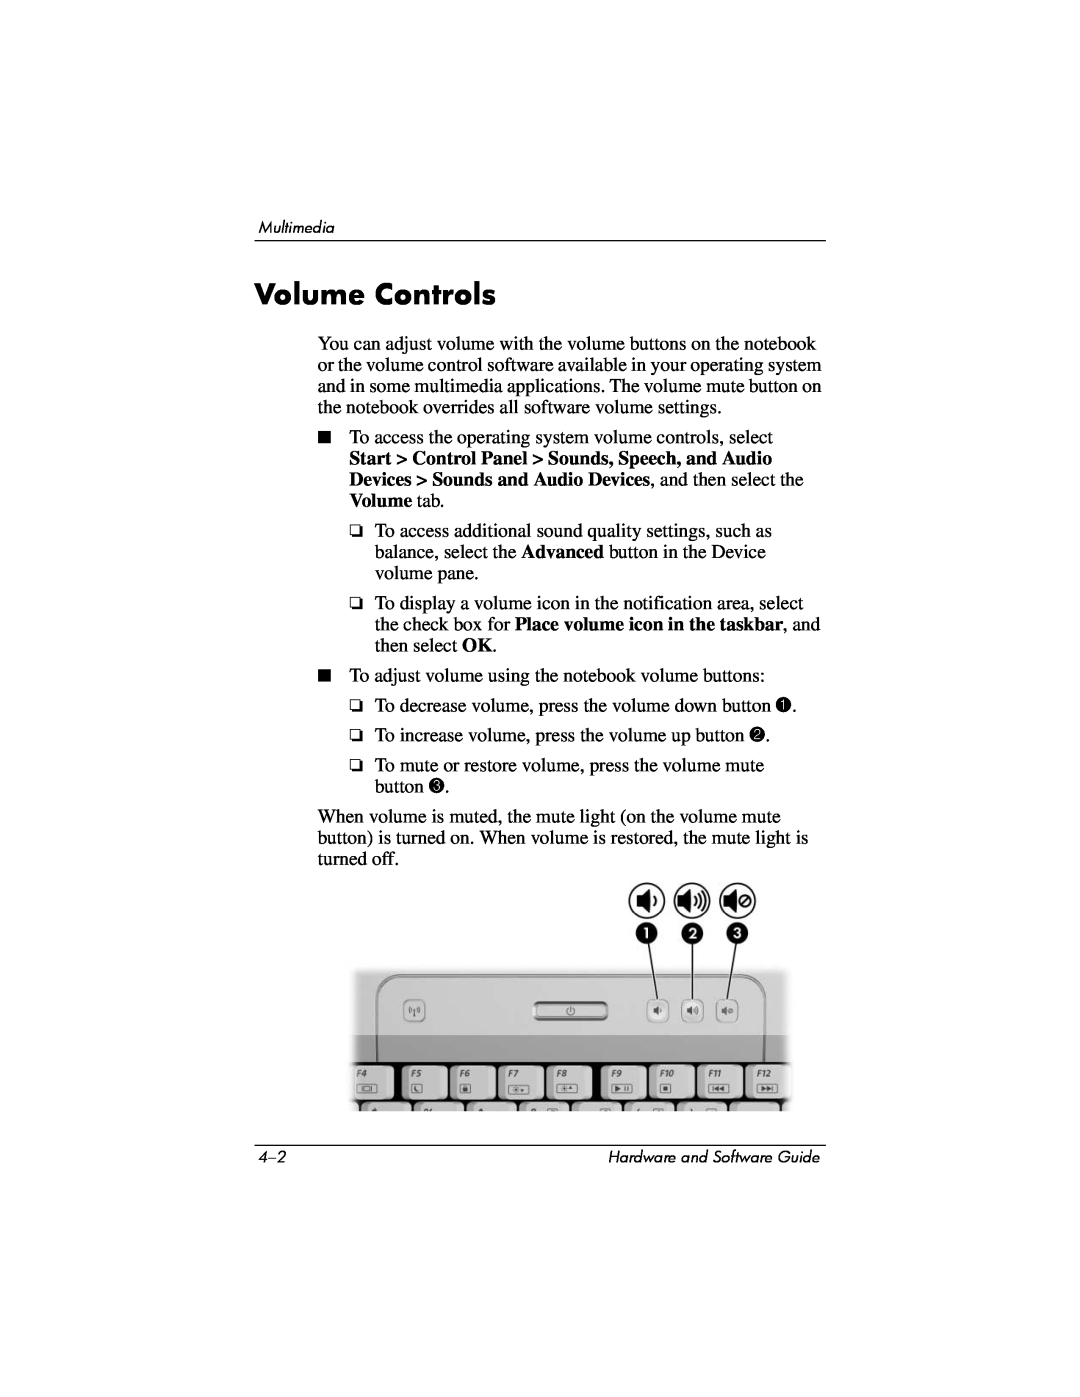 Compaq Presario M2000 manual Volume Controls 